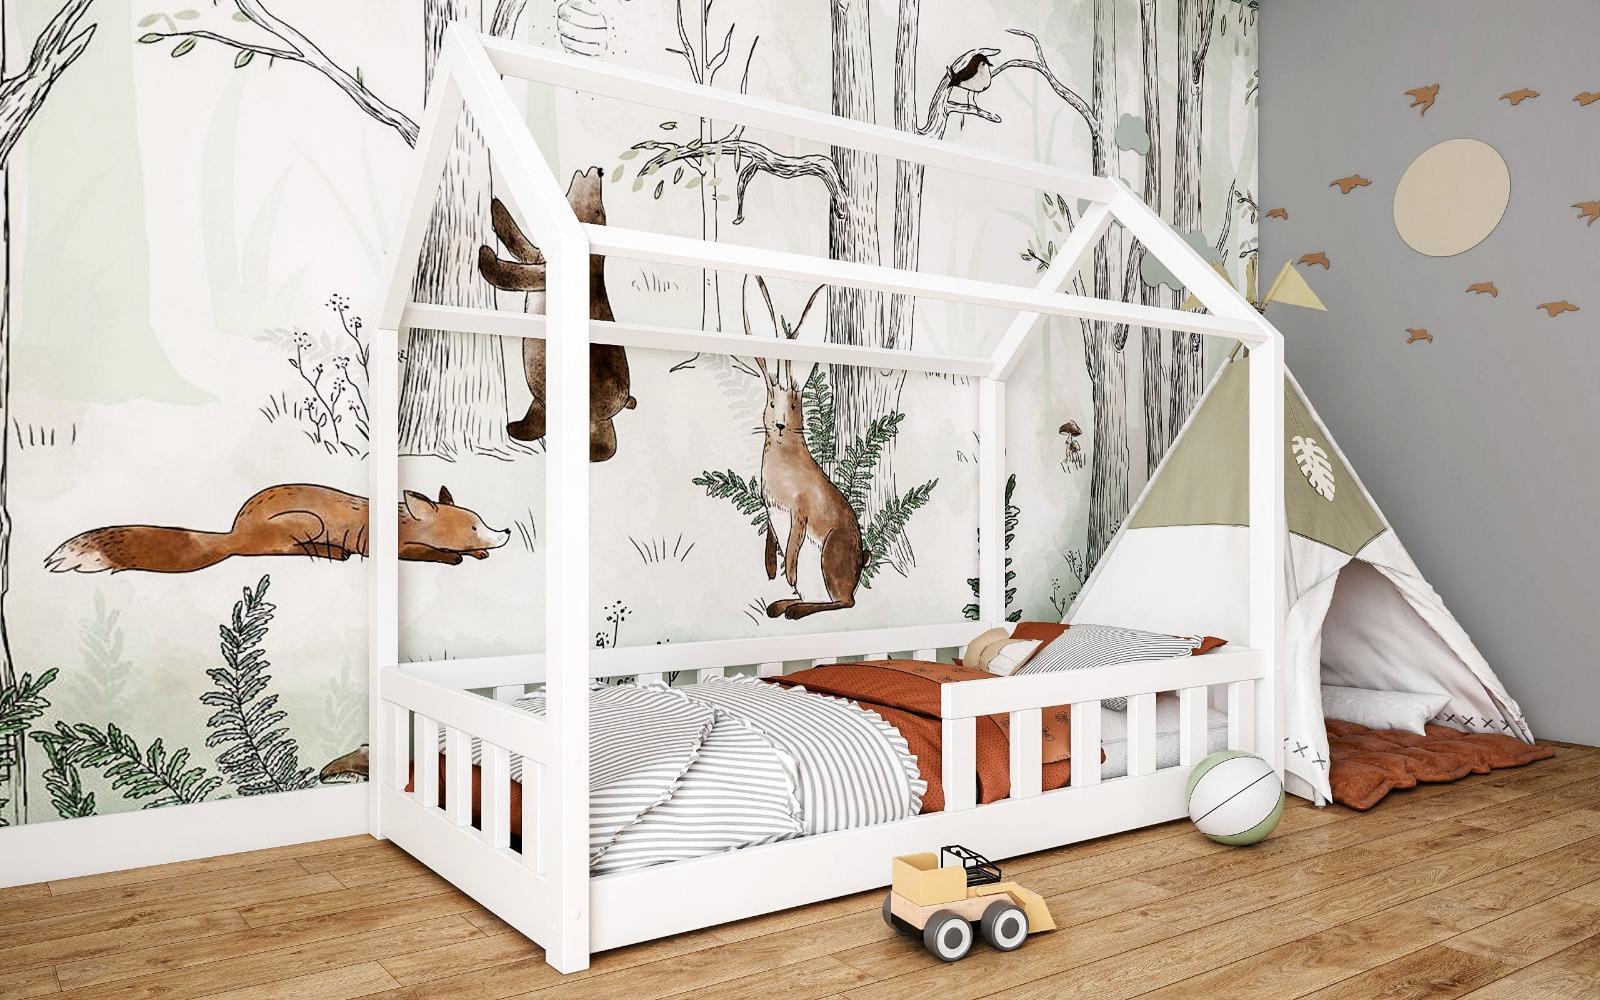 Łóżko domek LUNA 160x80 cm dla dzieci z barierkami do pokoju dziecięcego białe nr. 3